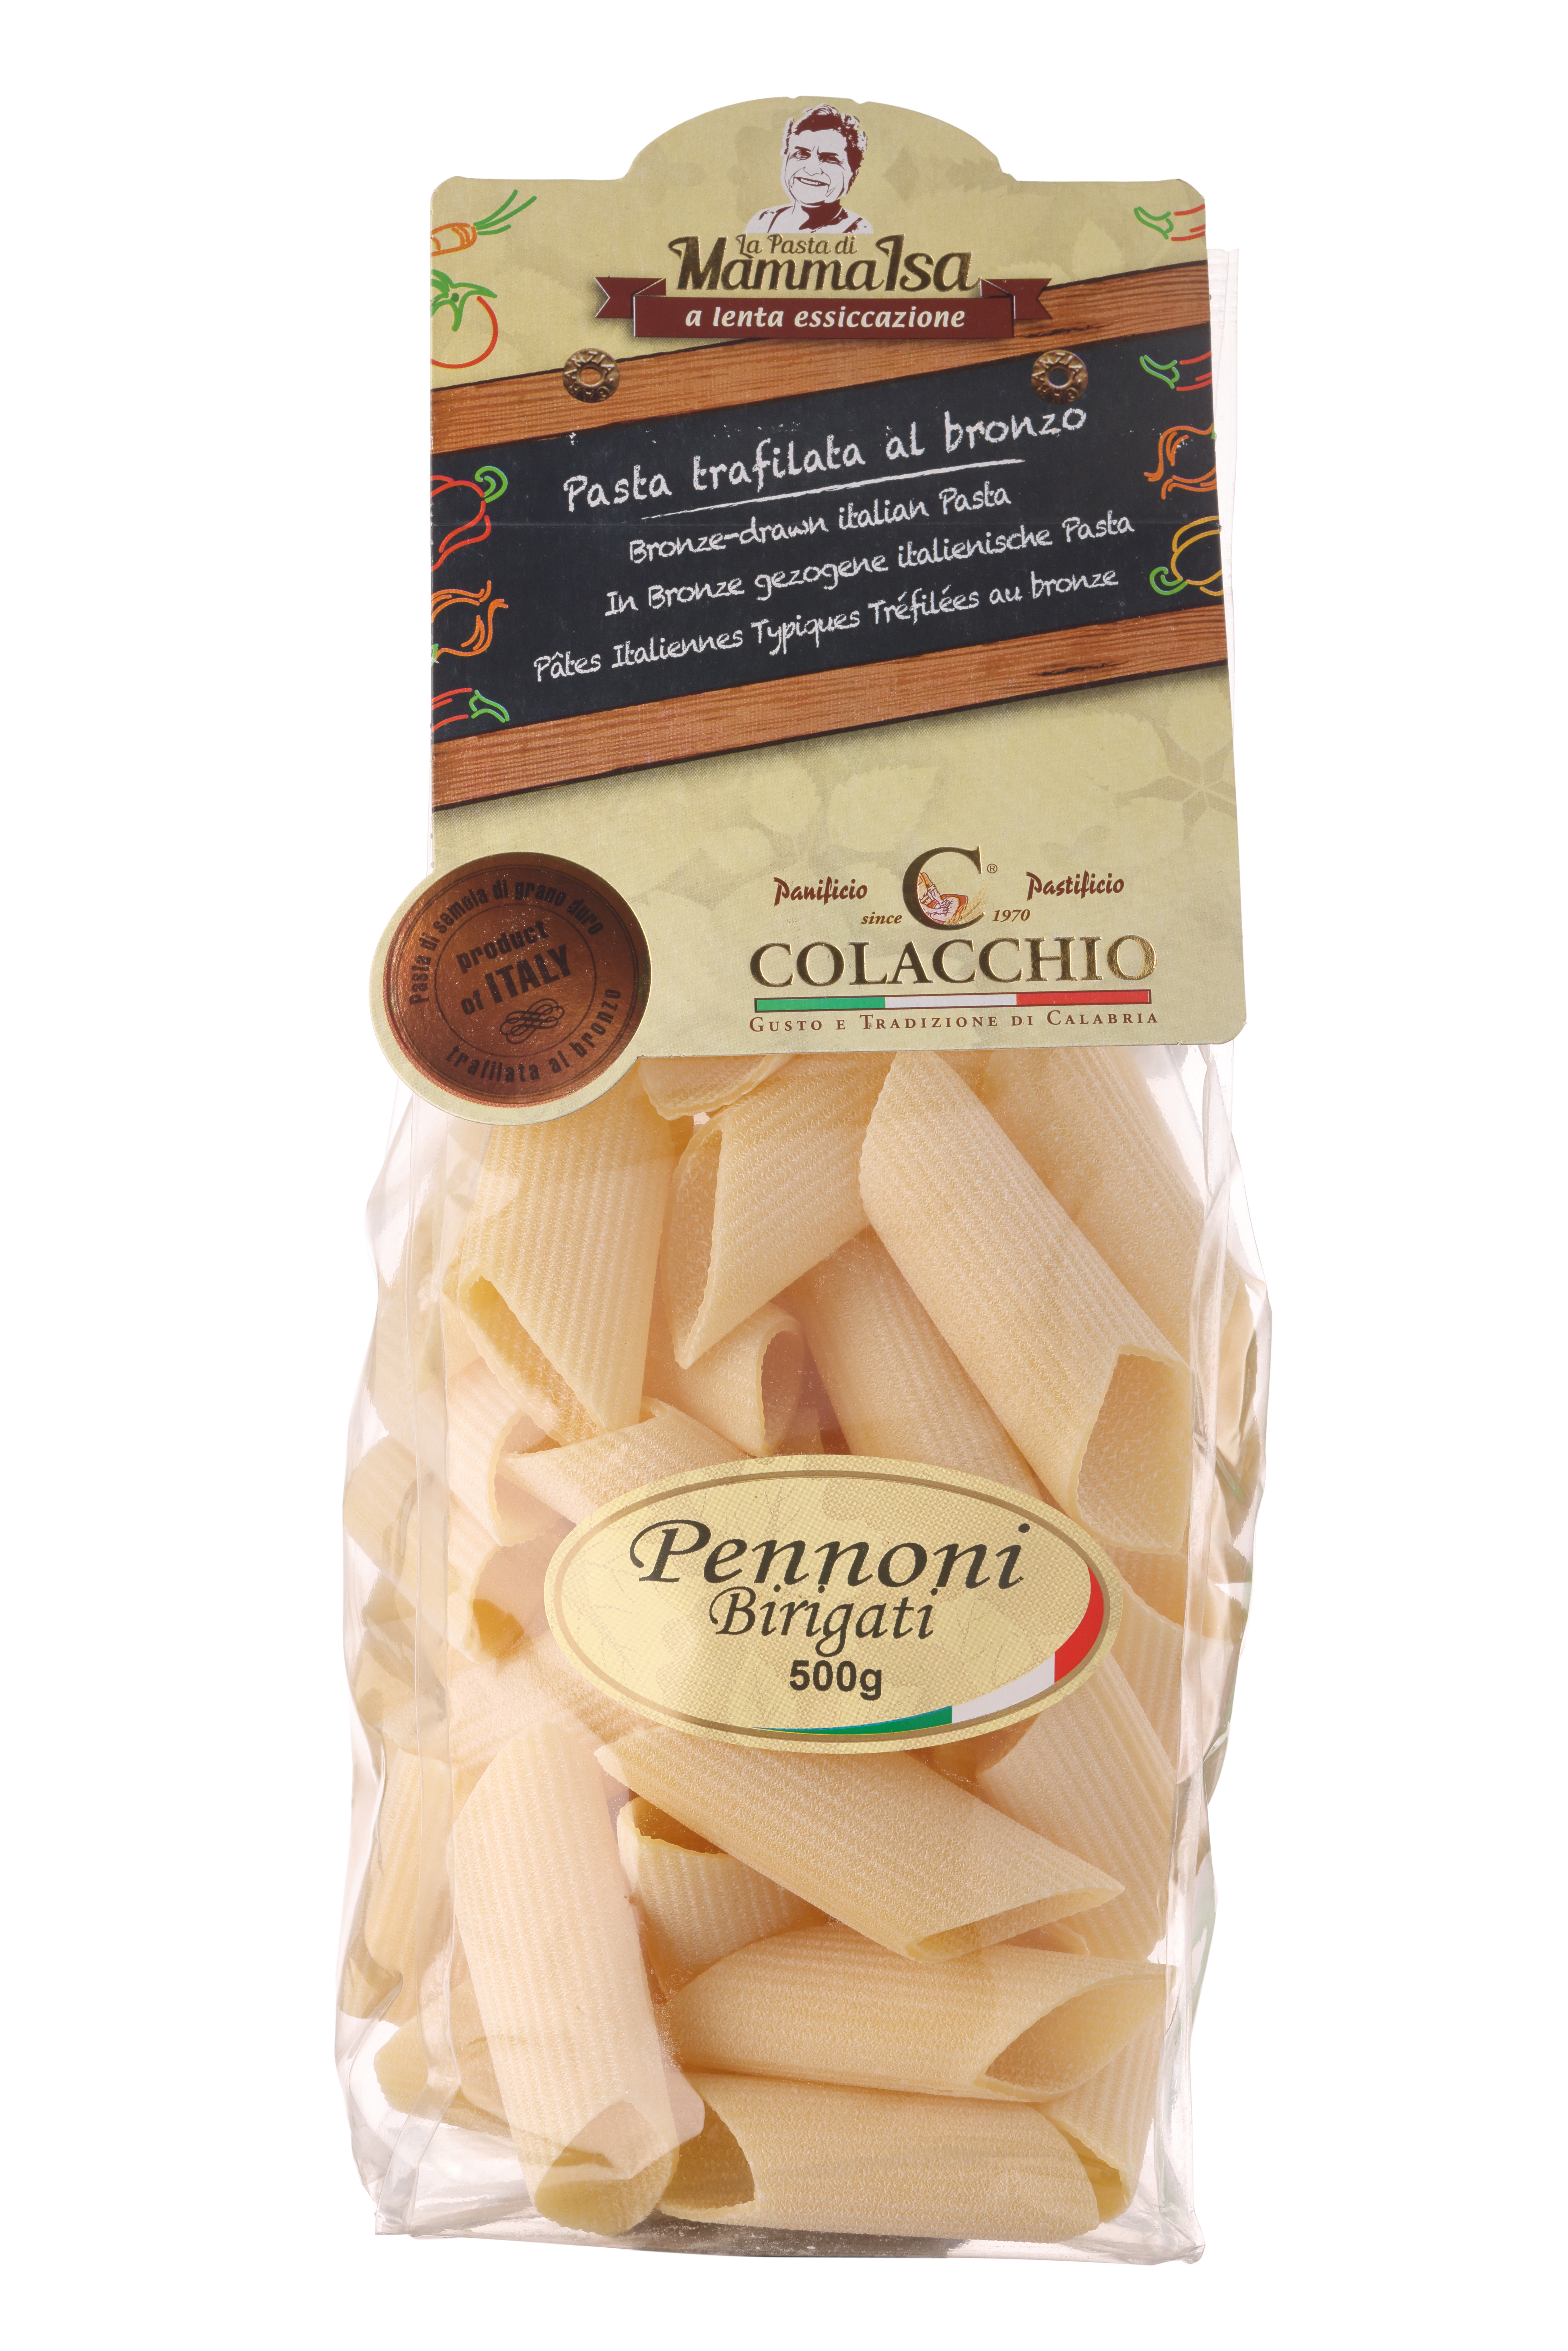 Colacchio, "Pennoni Birigati" Pasta, 500g